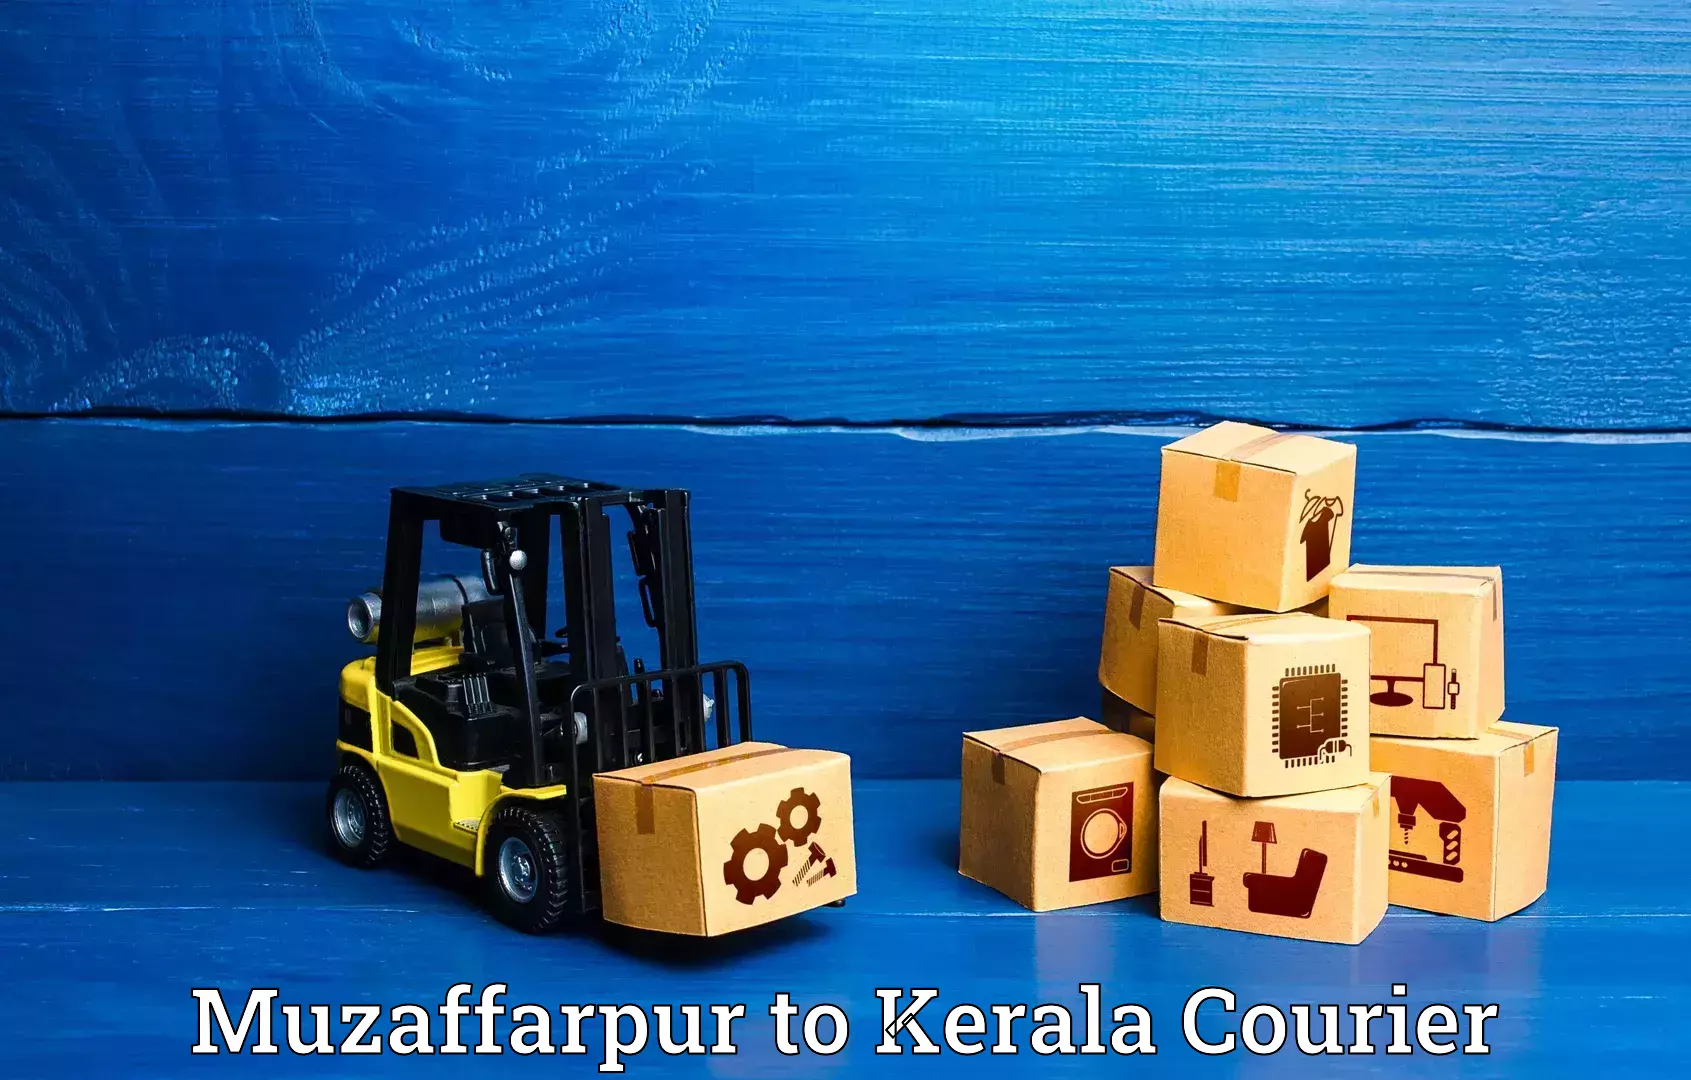 High-quality baggage shipment Muzaffarpur to Kochi